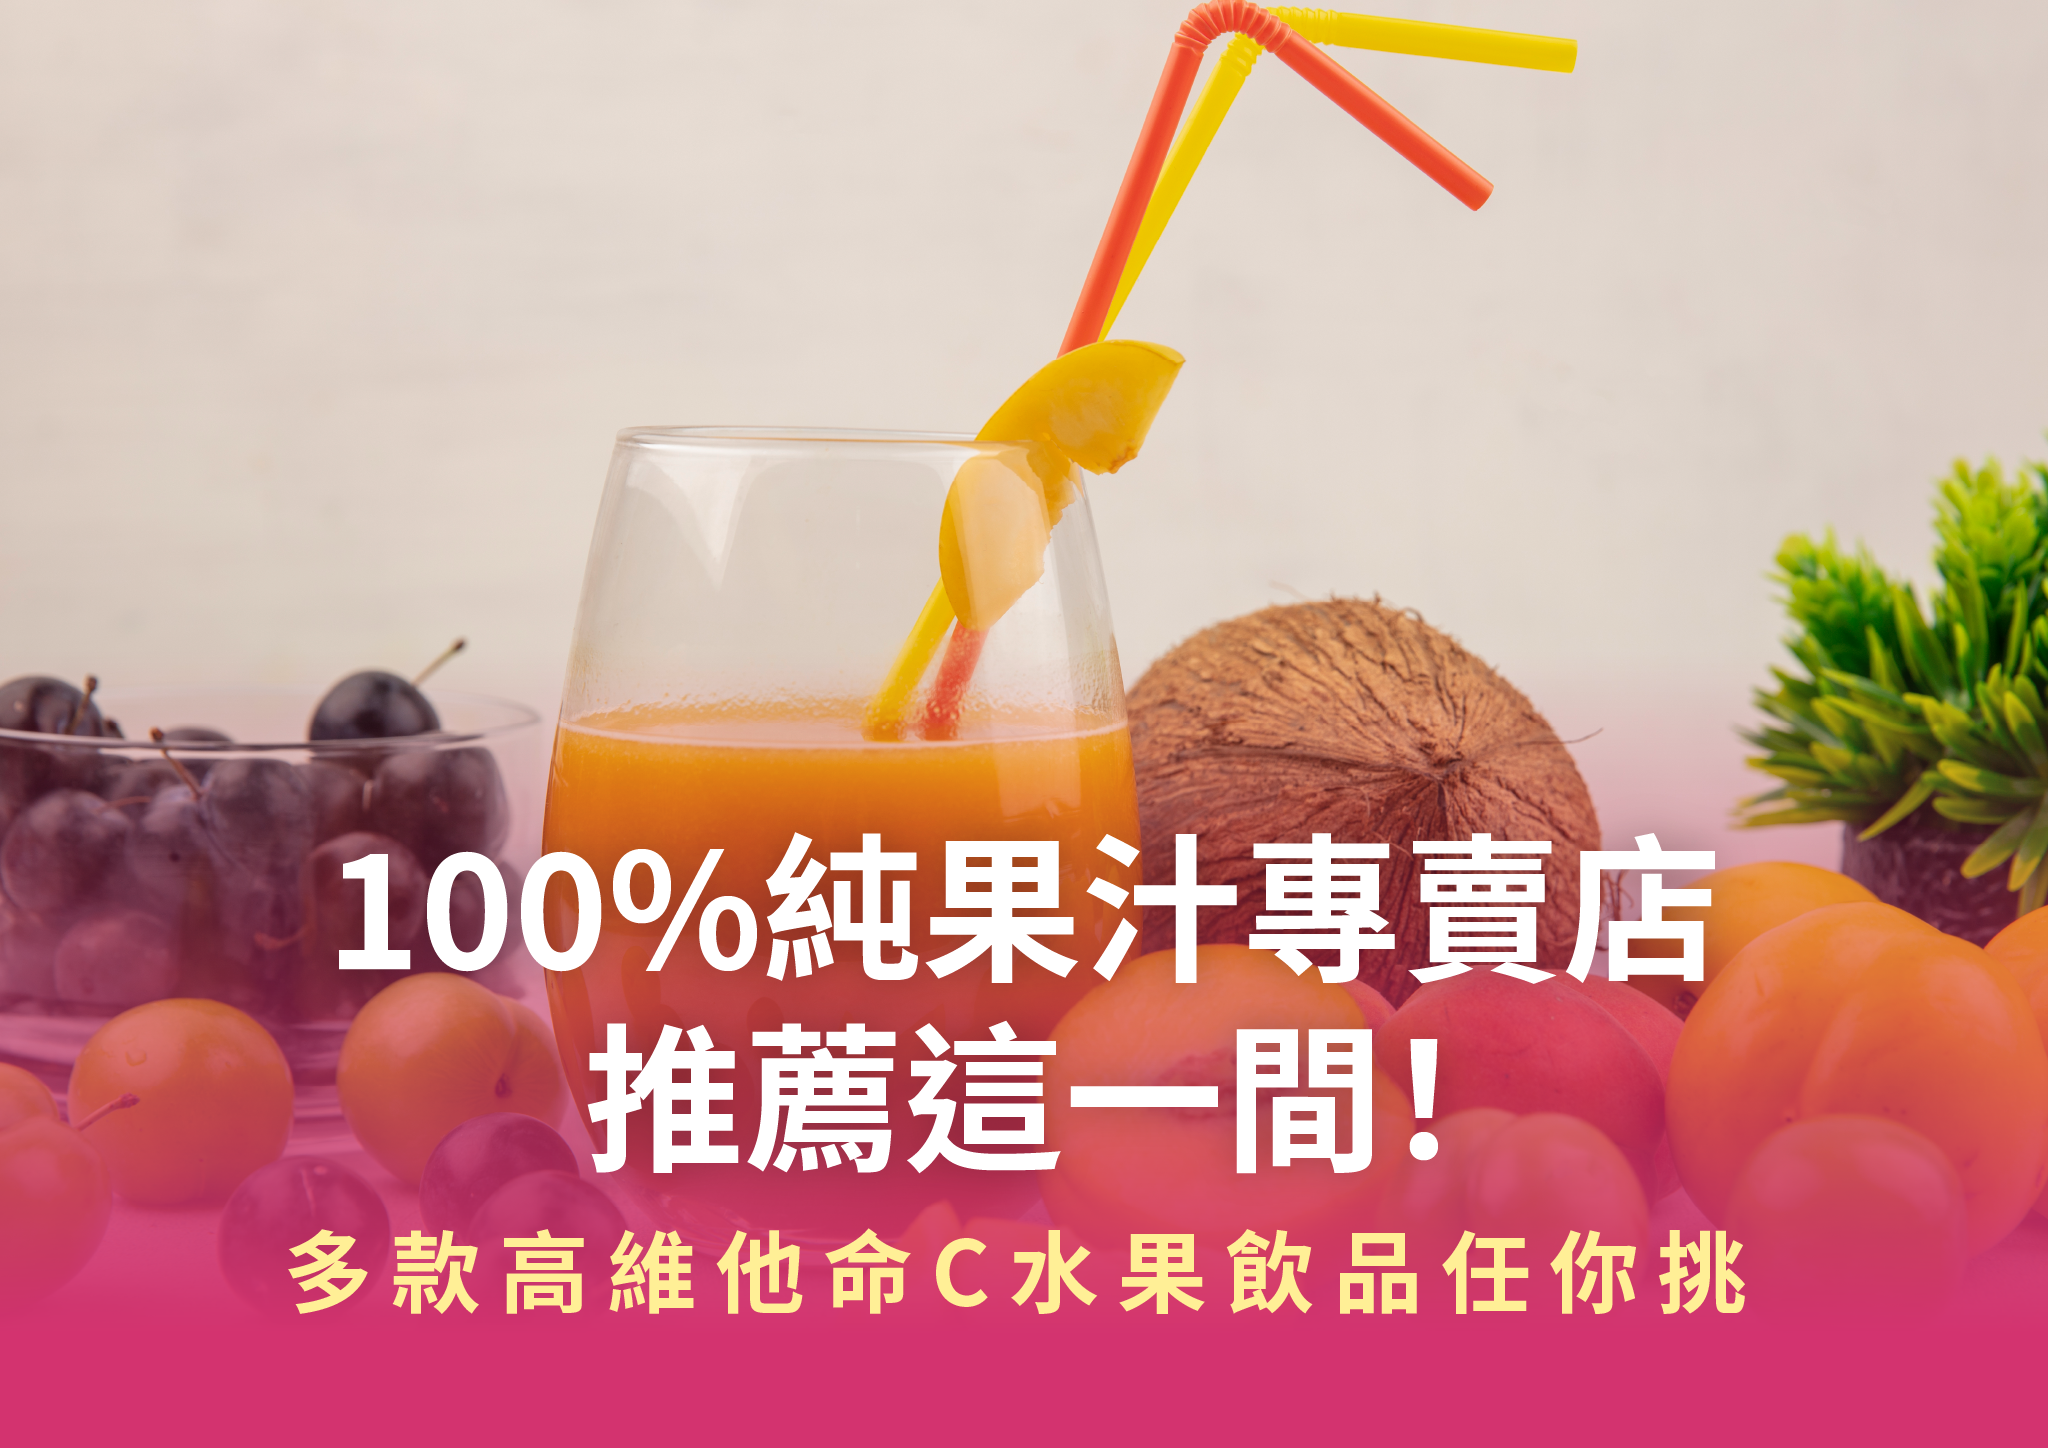 100%純果汁專賣店的那瓦森百分百天然果汁產品照